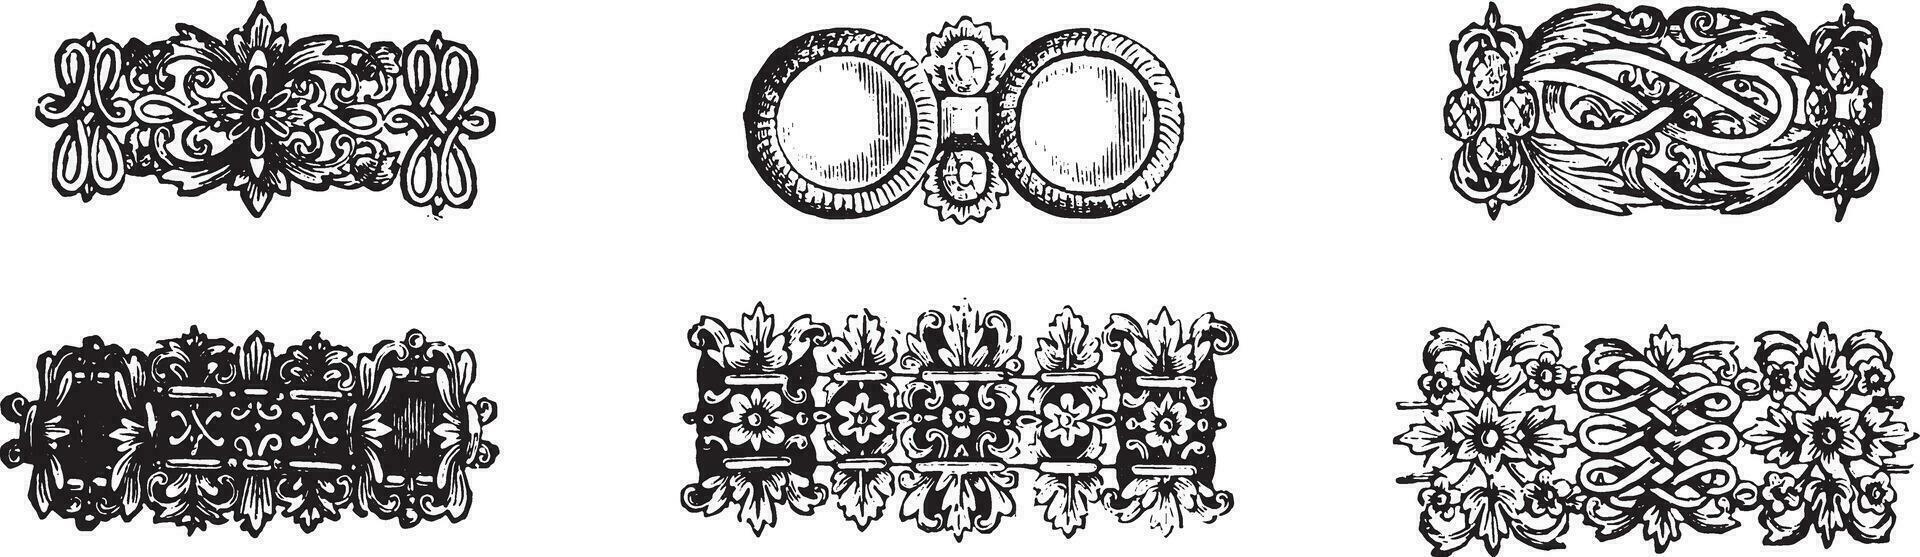 exemplaren kettingen zeventiende eeuw, wijnoogst gravure. vector